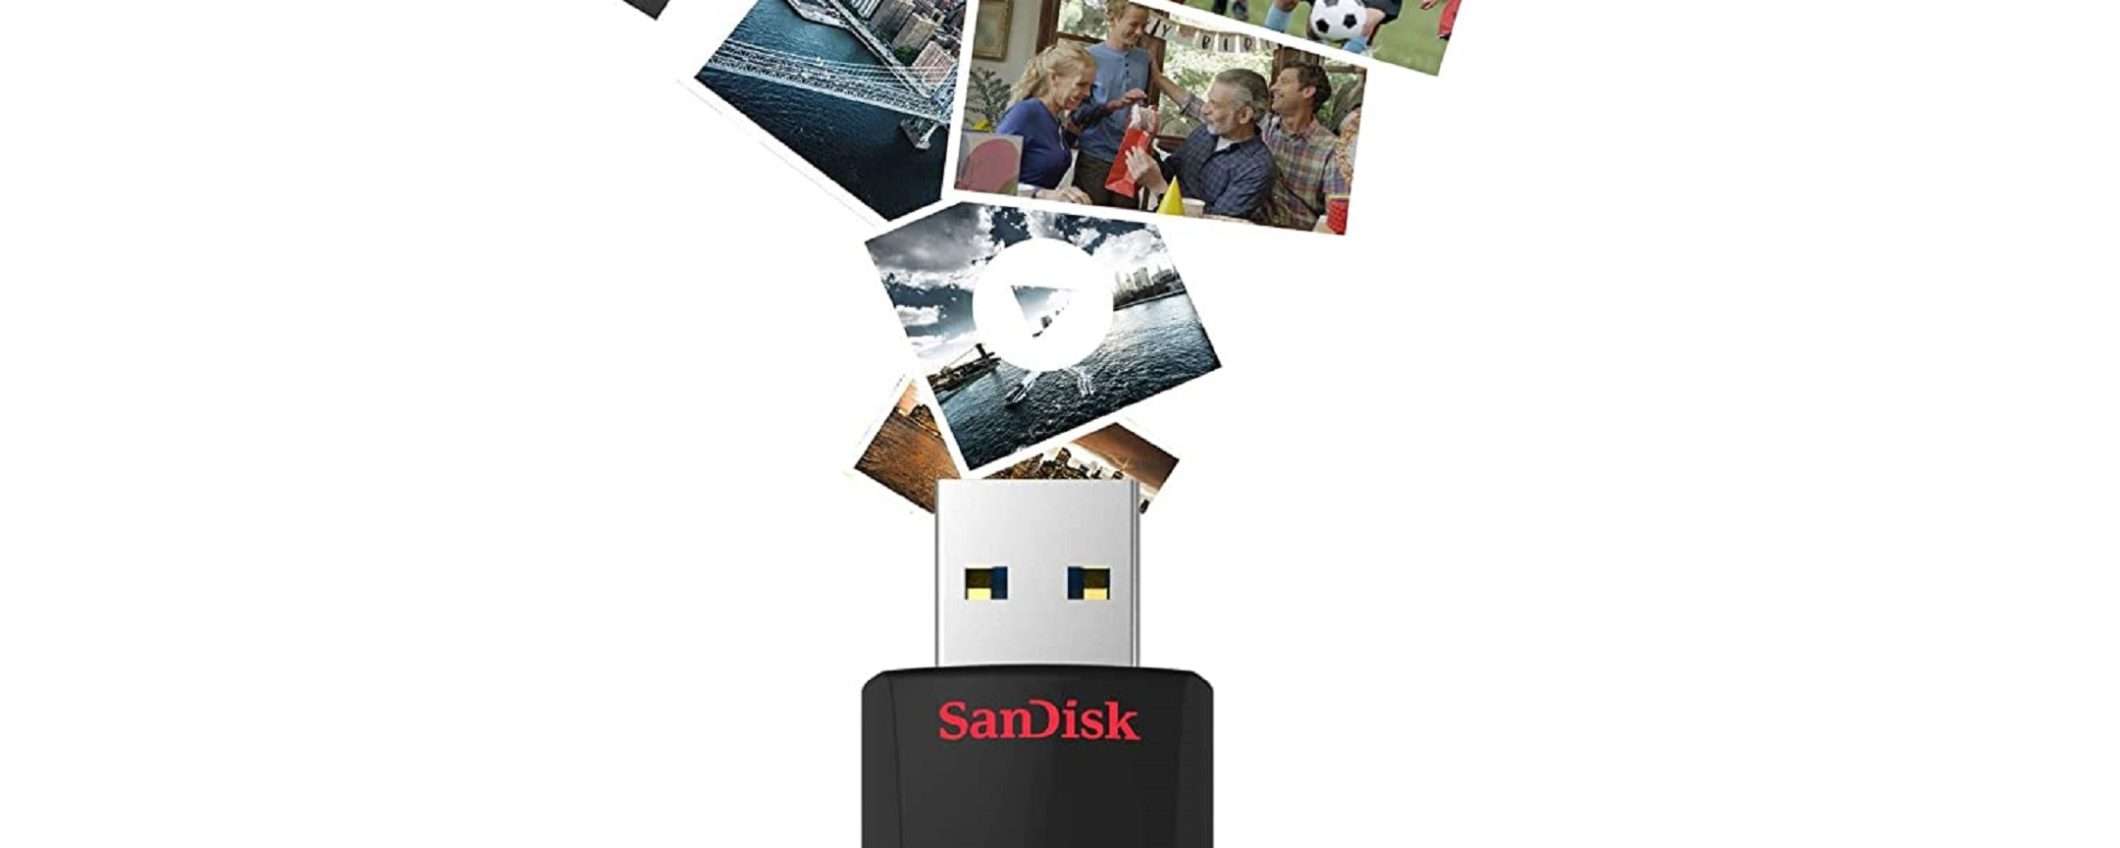 Chiavetta USB SanDisk 256 GB a soli 26€? Su Amazon è possibile!